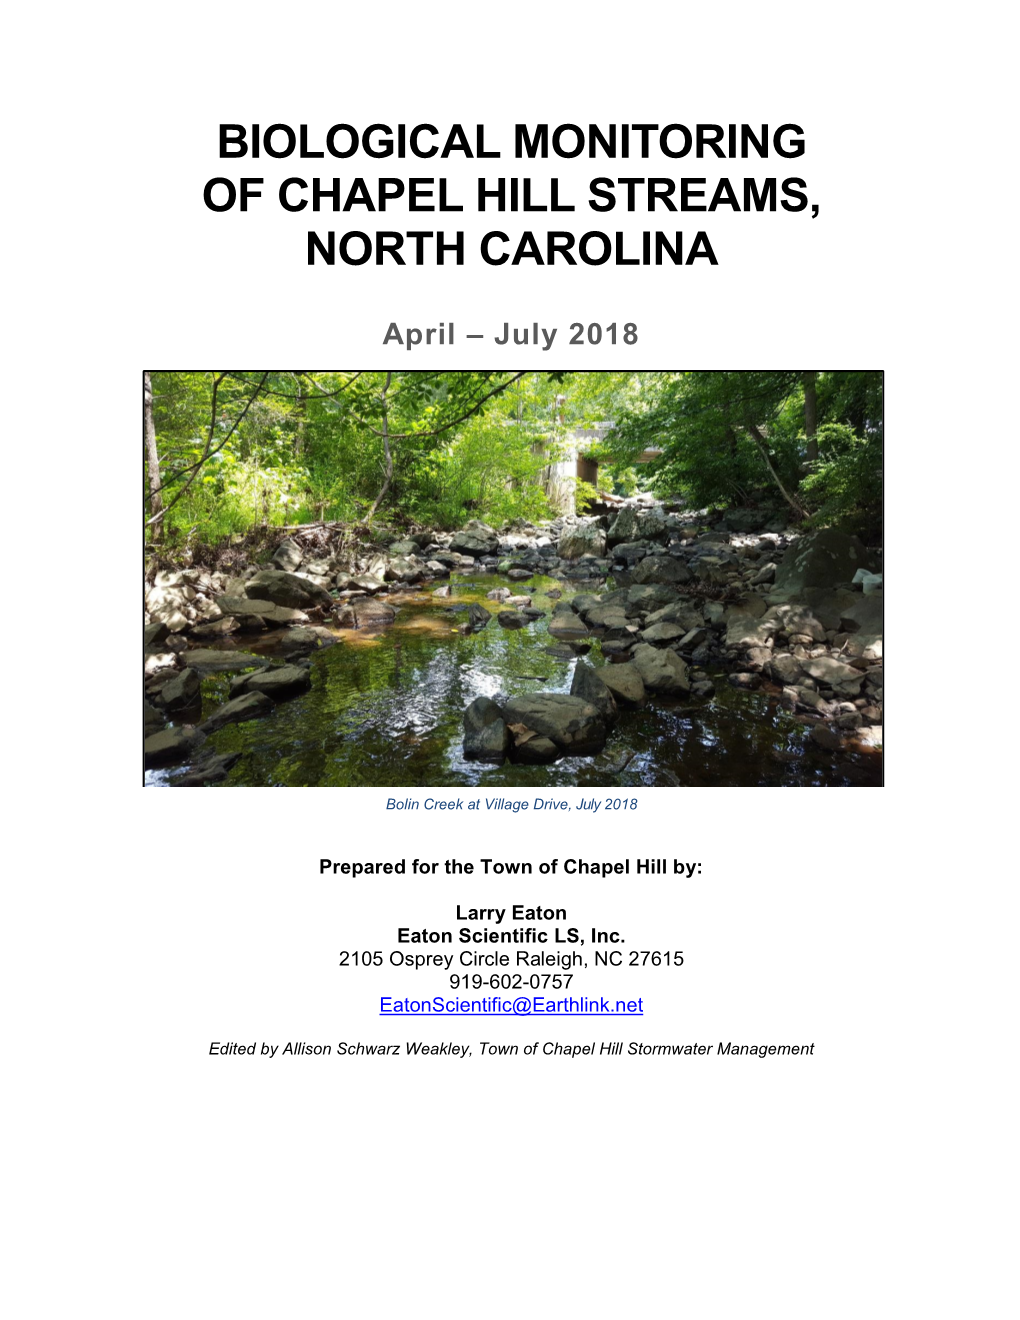 Biological Monitoring of Chapel Hill Streams, North Carolina